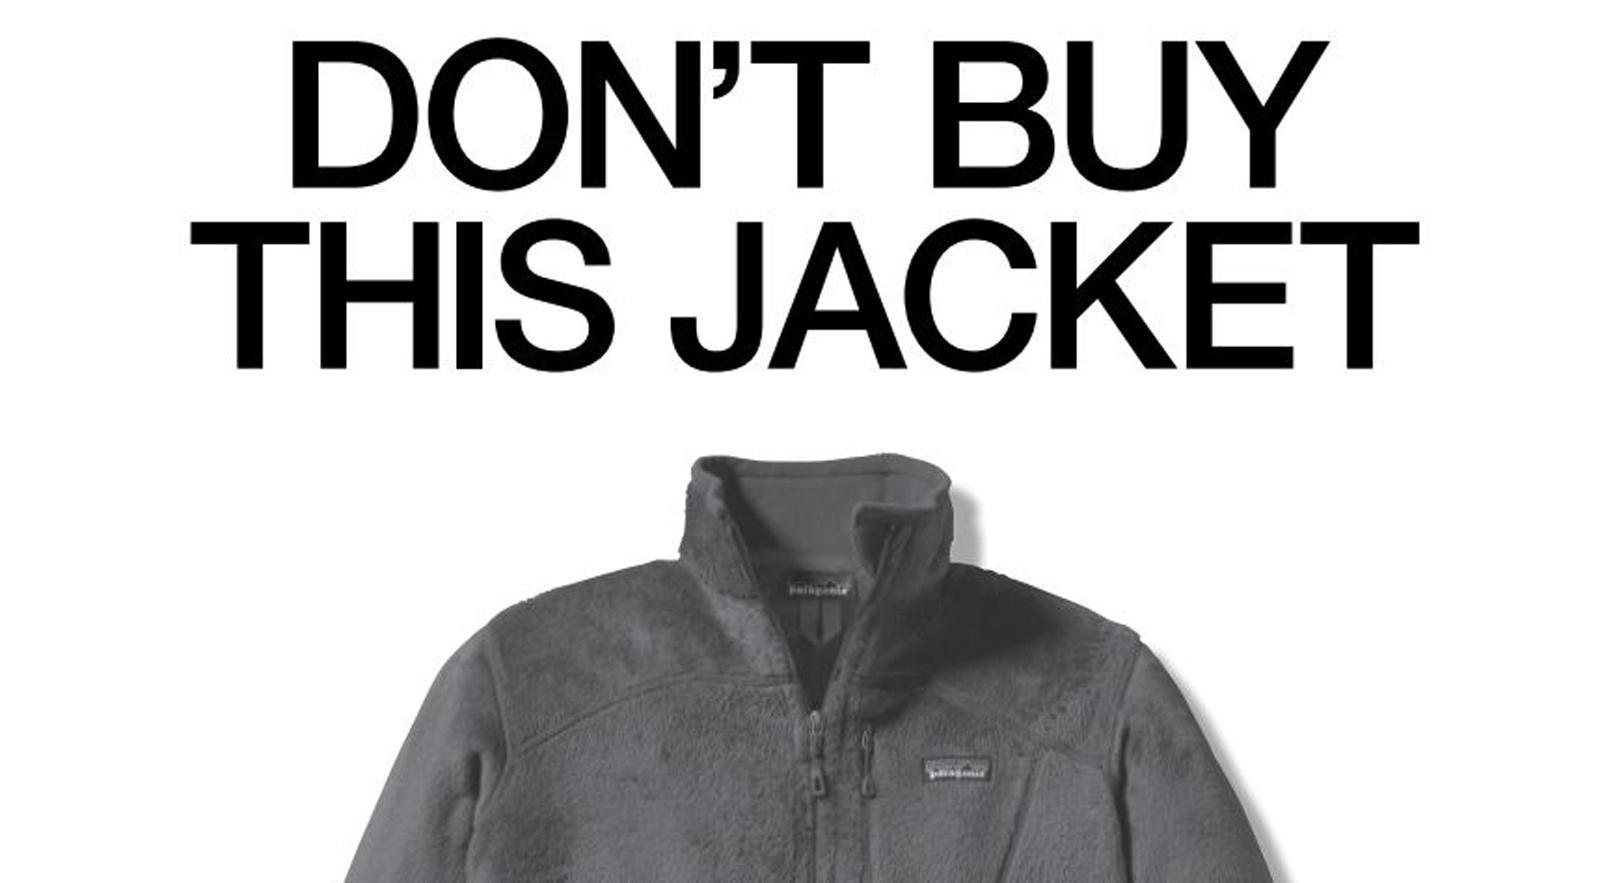 patagonia don't buy this jacket